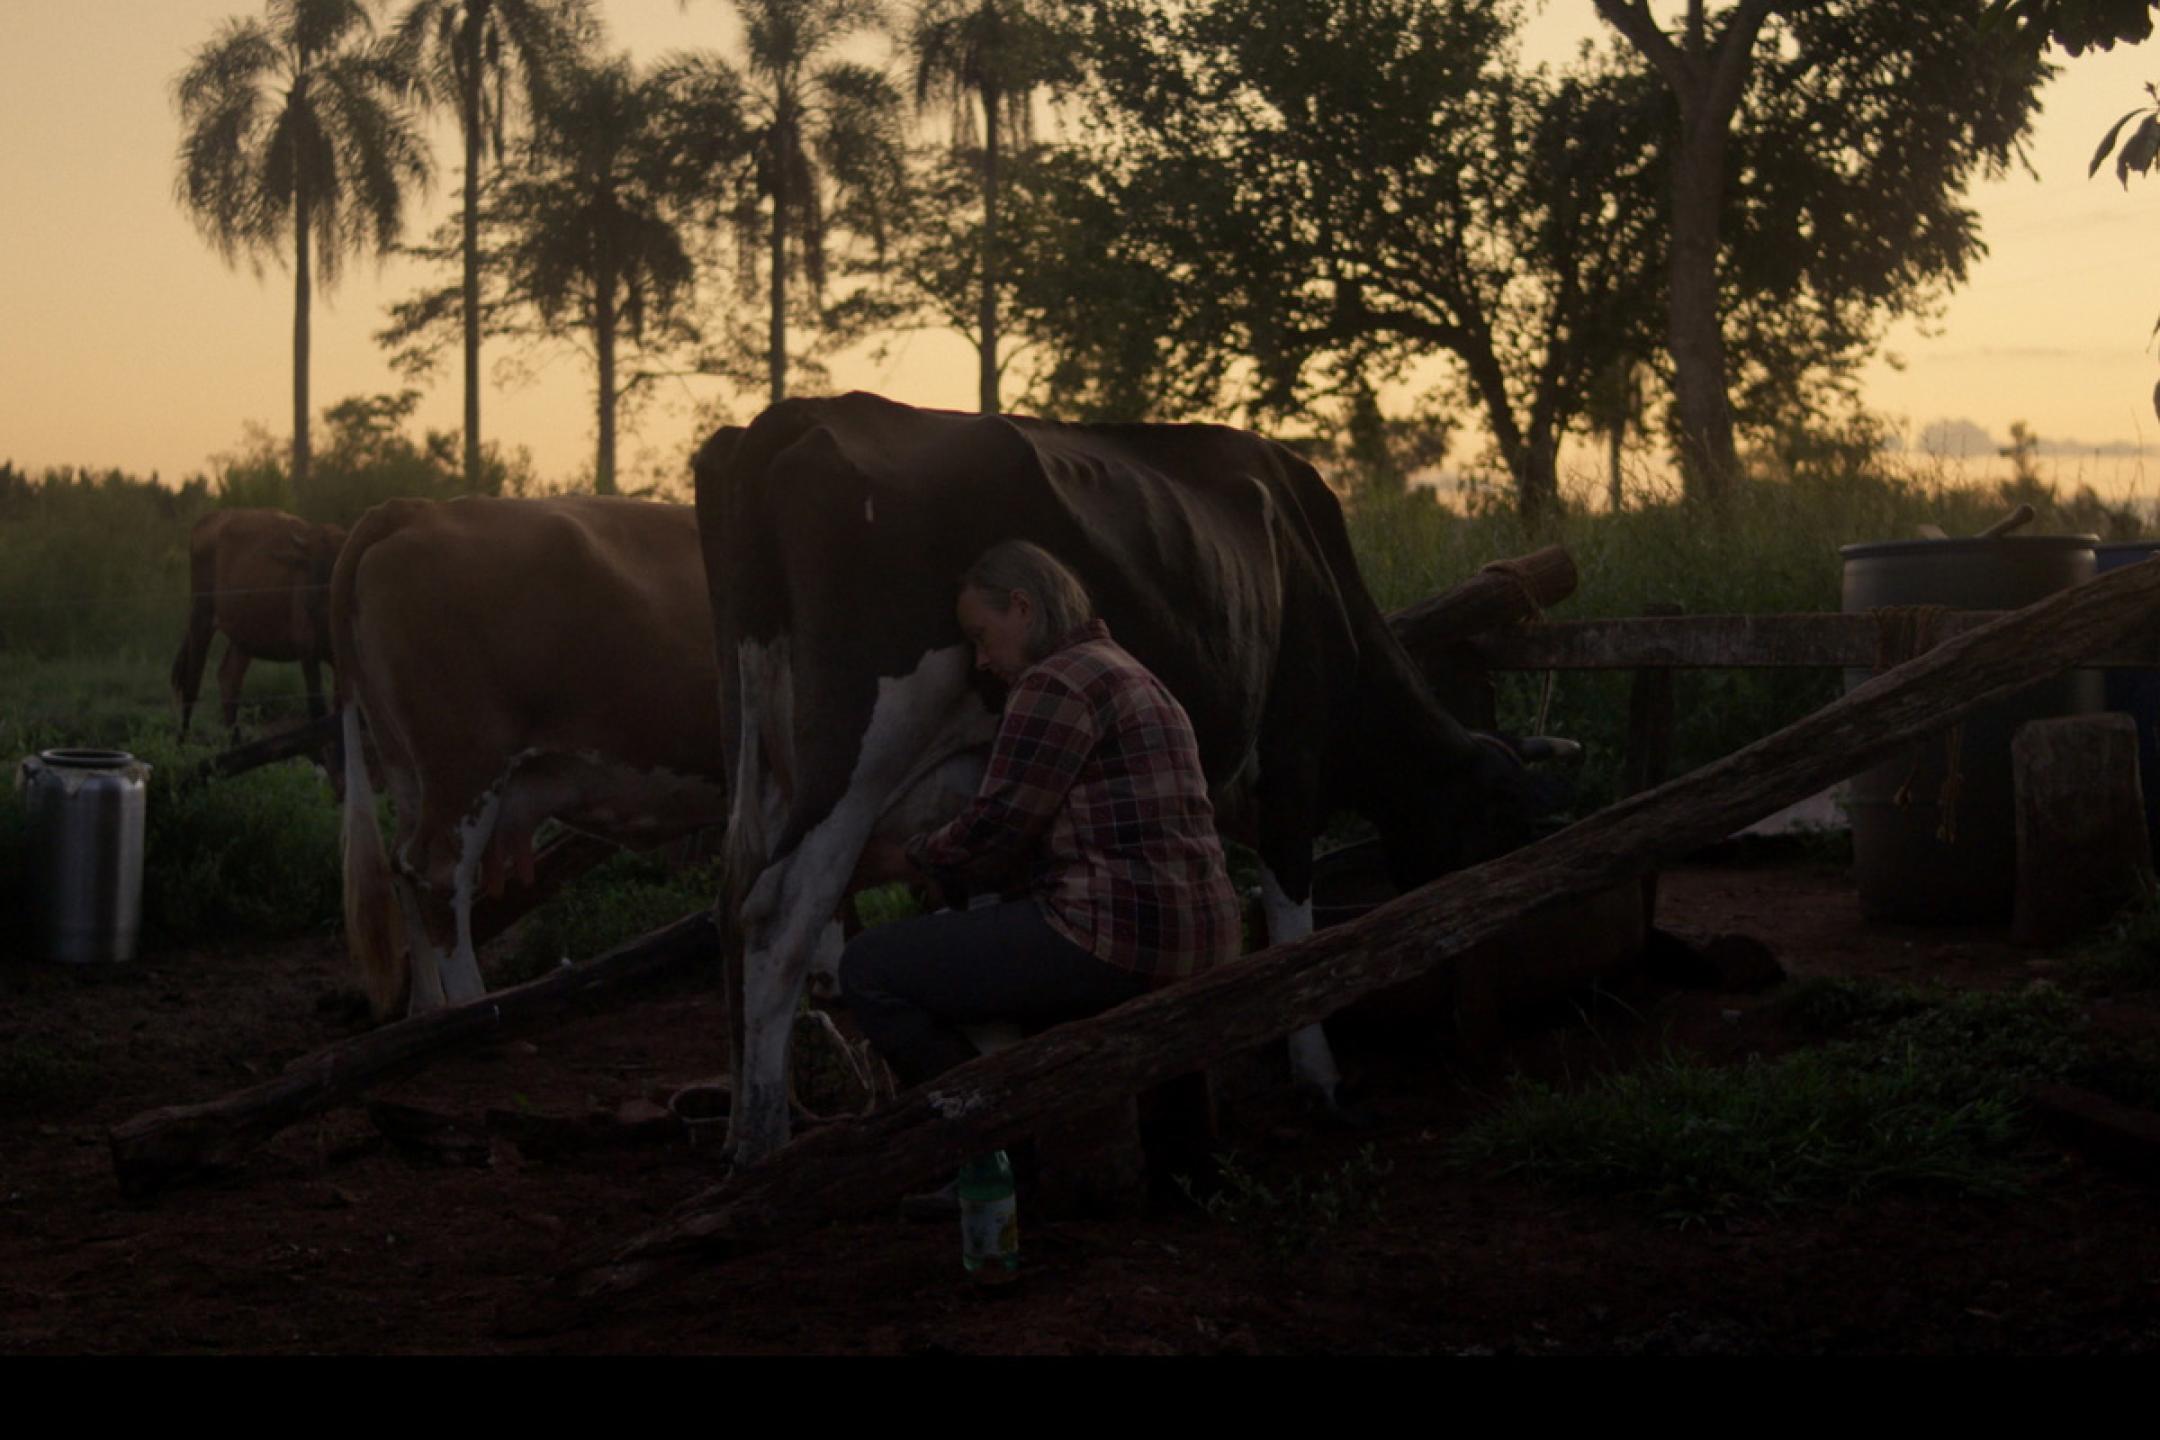 Eine Frau sitzt auf Hocker und melkt eine Kuh auf einer Weide umgeben von Palmen und anderen Bäumen. Es ist schummriges Dämmerlicht.